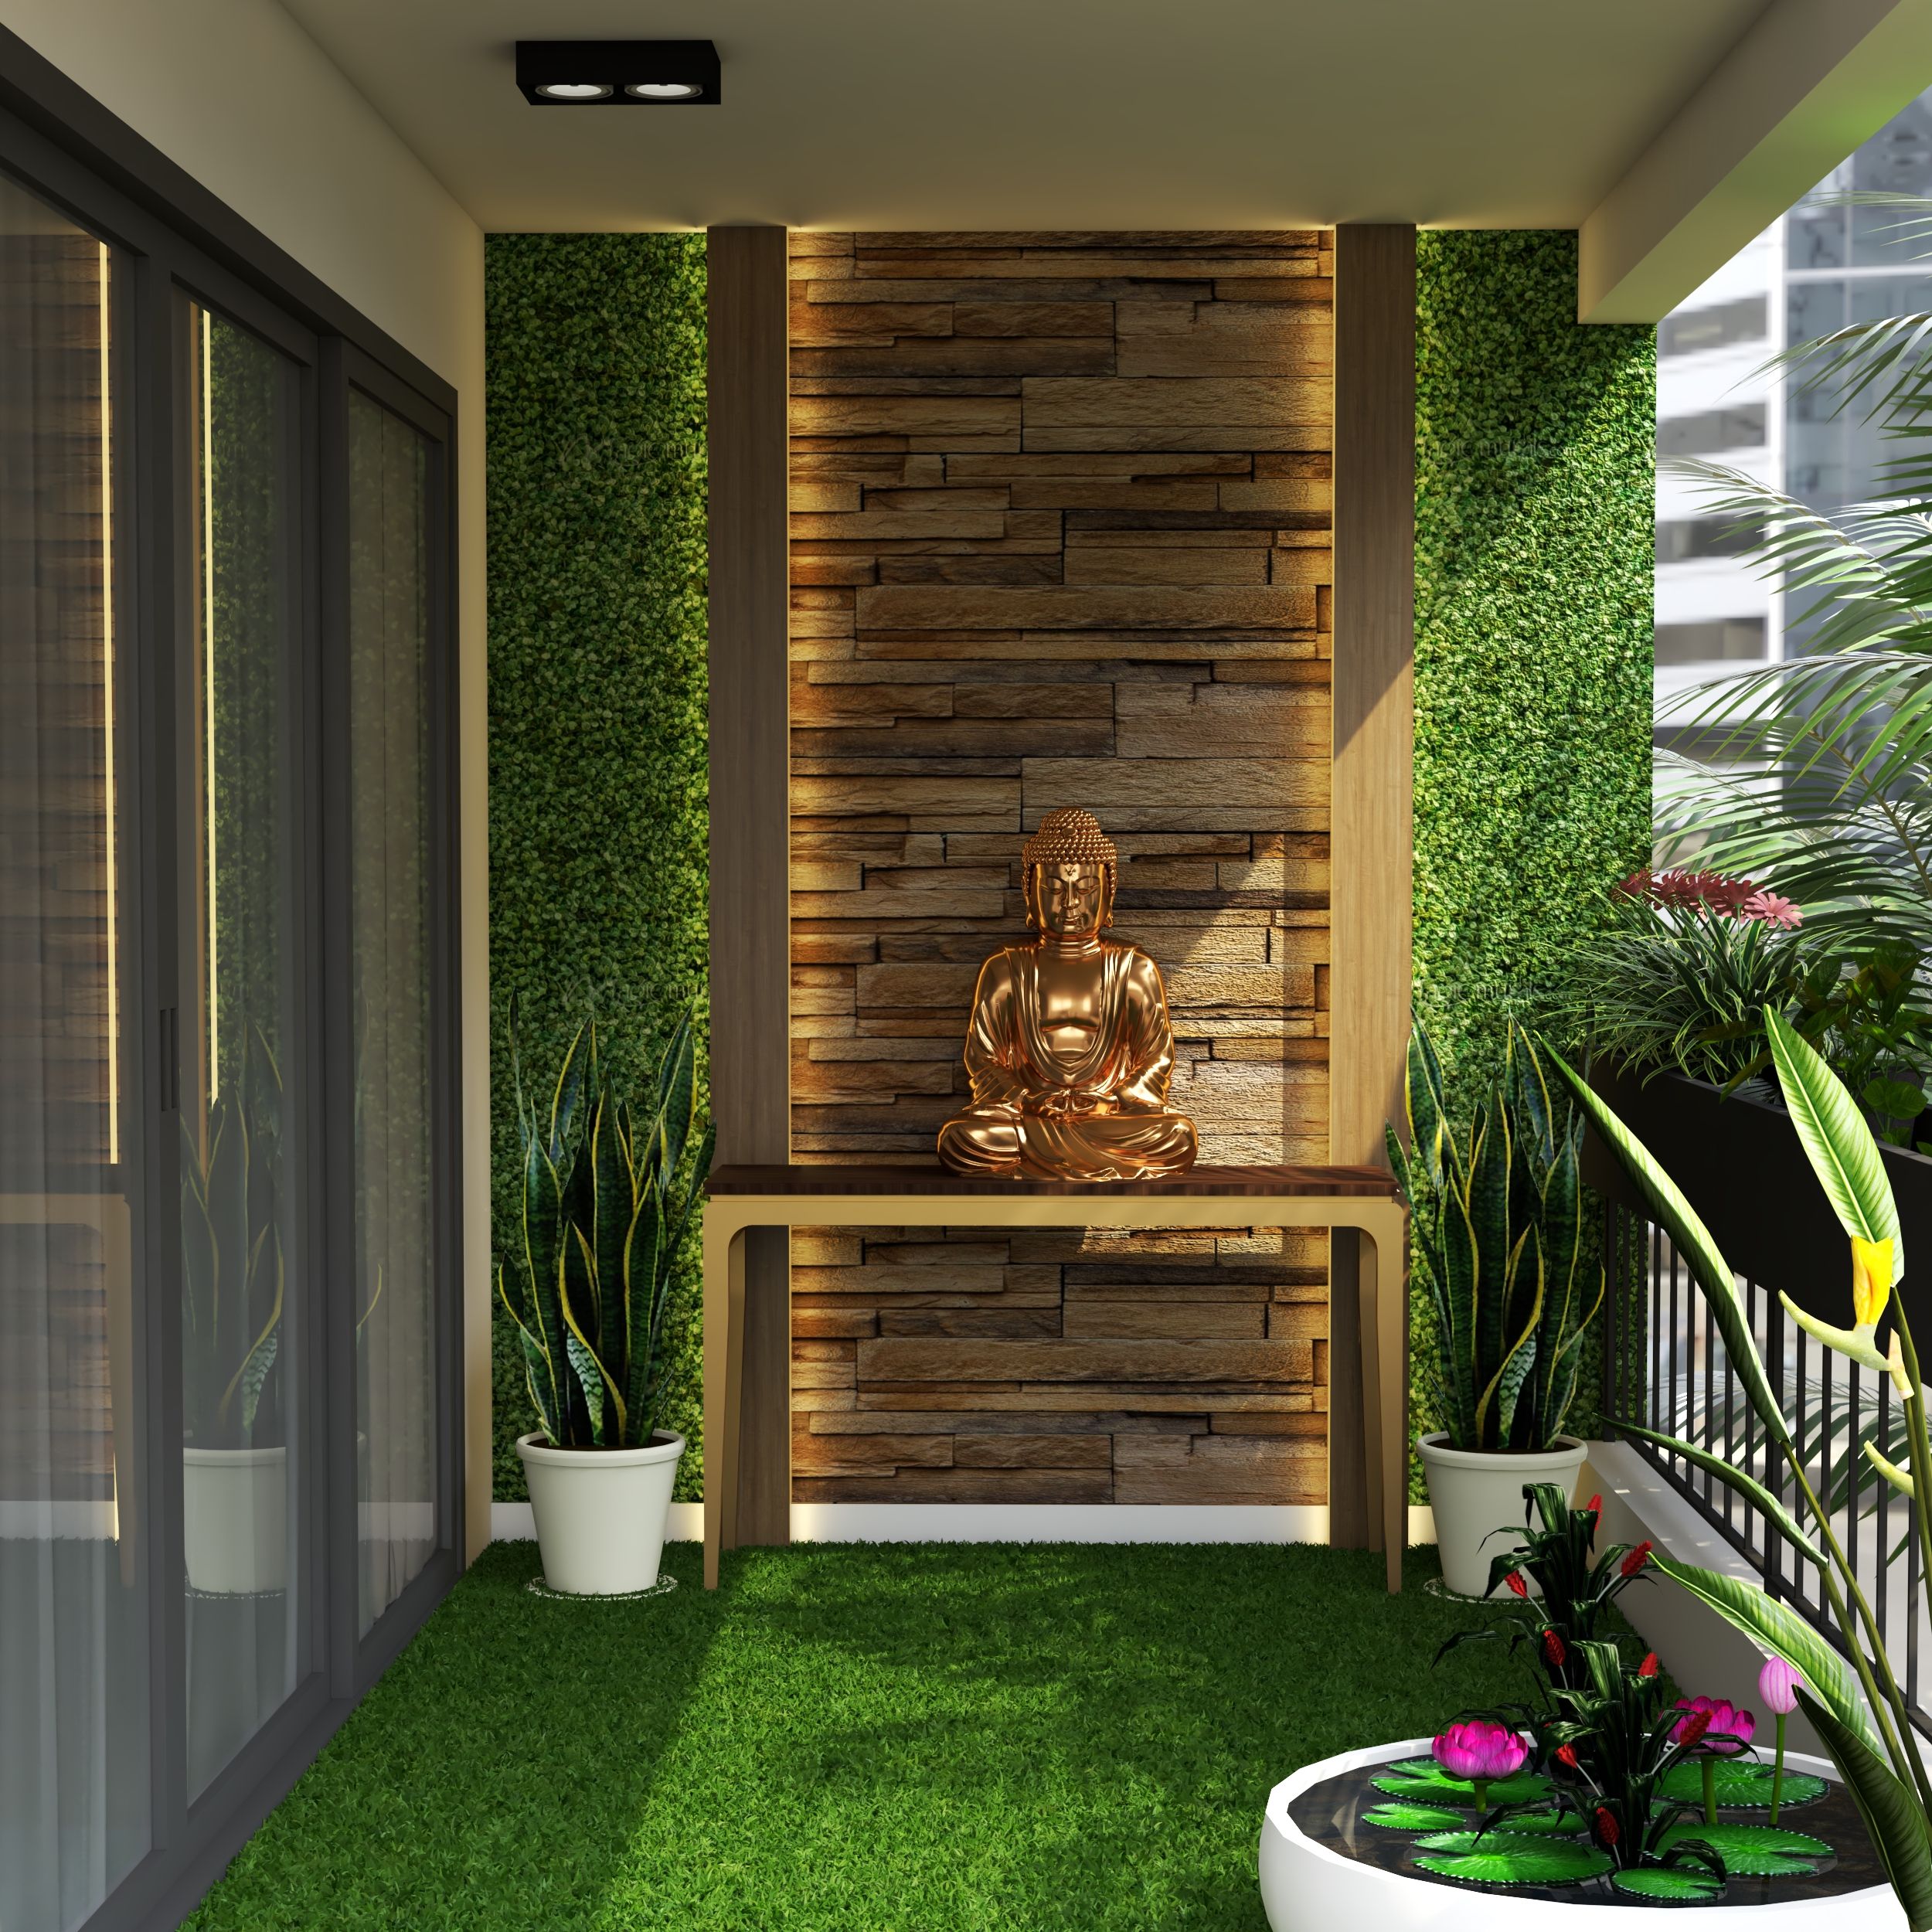 Contemporary Balcony Design With Vertical Garden